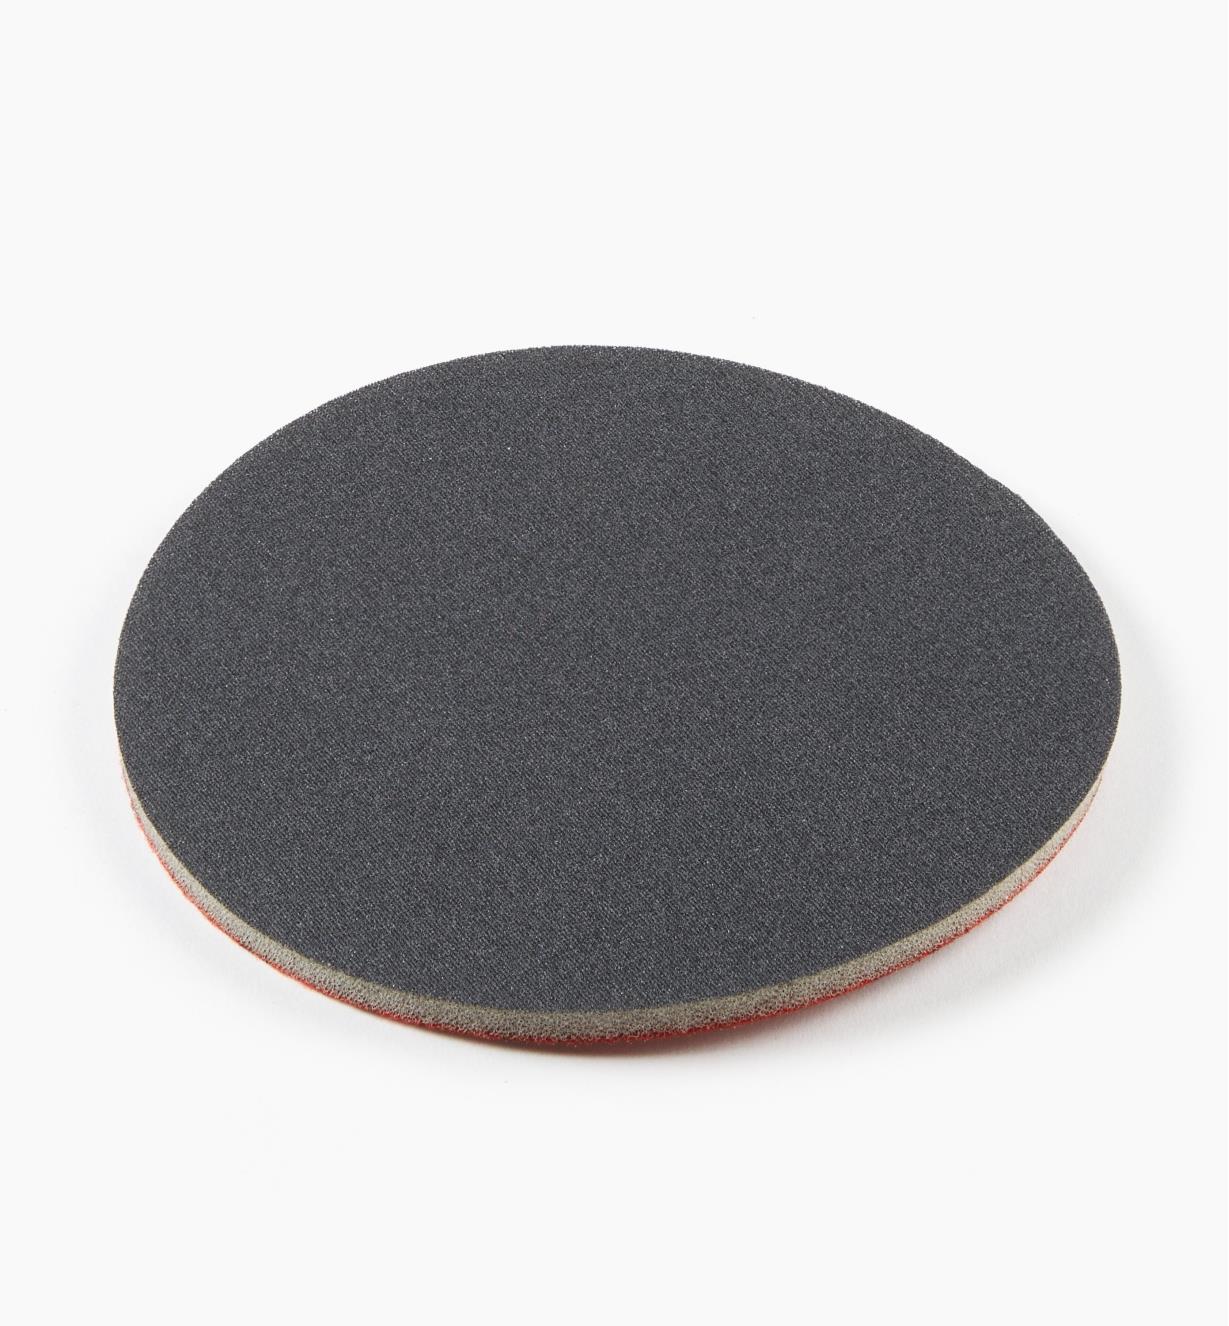 08K1851 - 180x 6" Abralon Foam Grip Disc, ea.